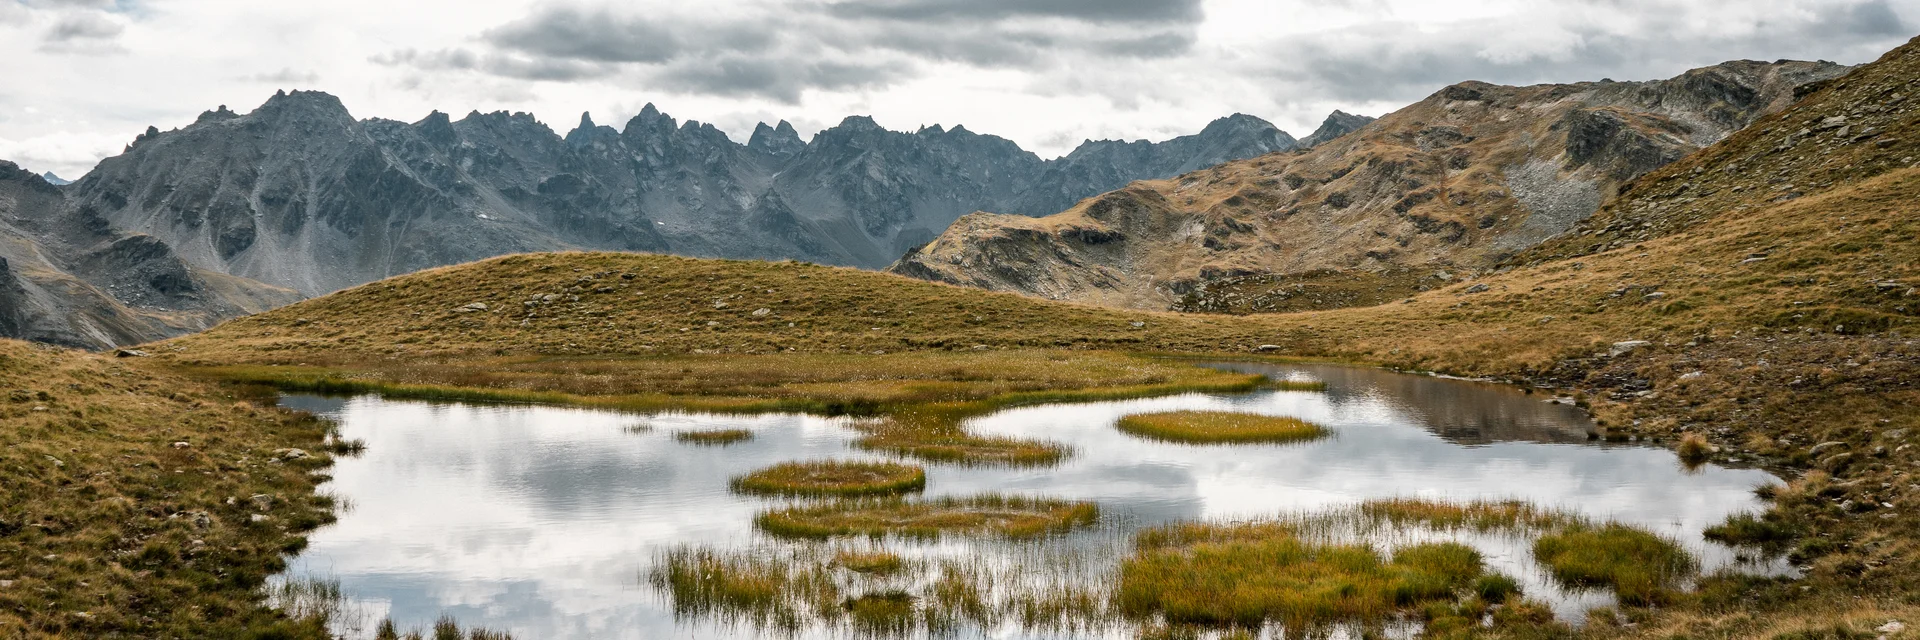 Die Natur beim Wandern entlang des Madrisella Gipfelweges in der Silvretta Montafon.  | © Silvretta Montafon - Vanessa Strauch